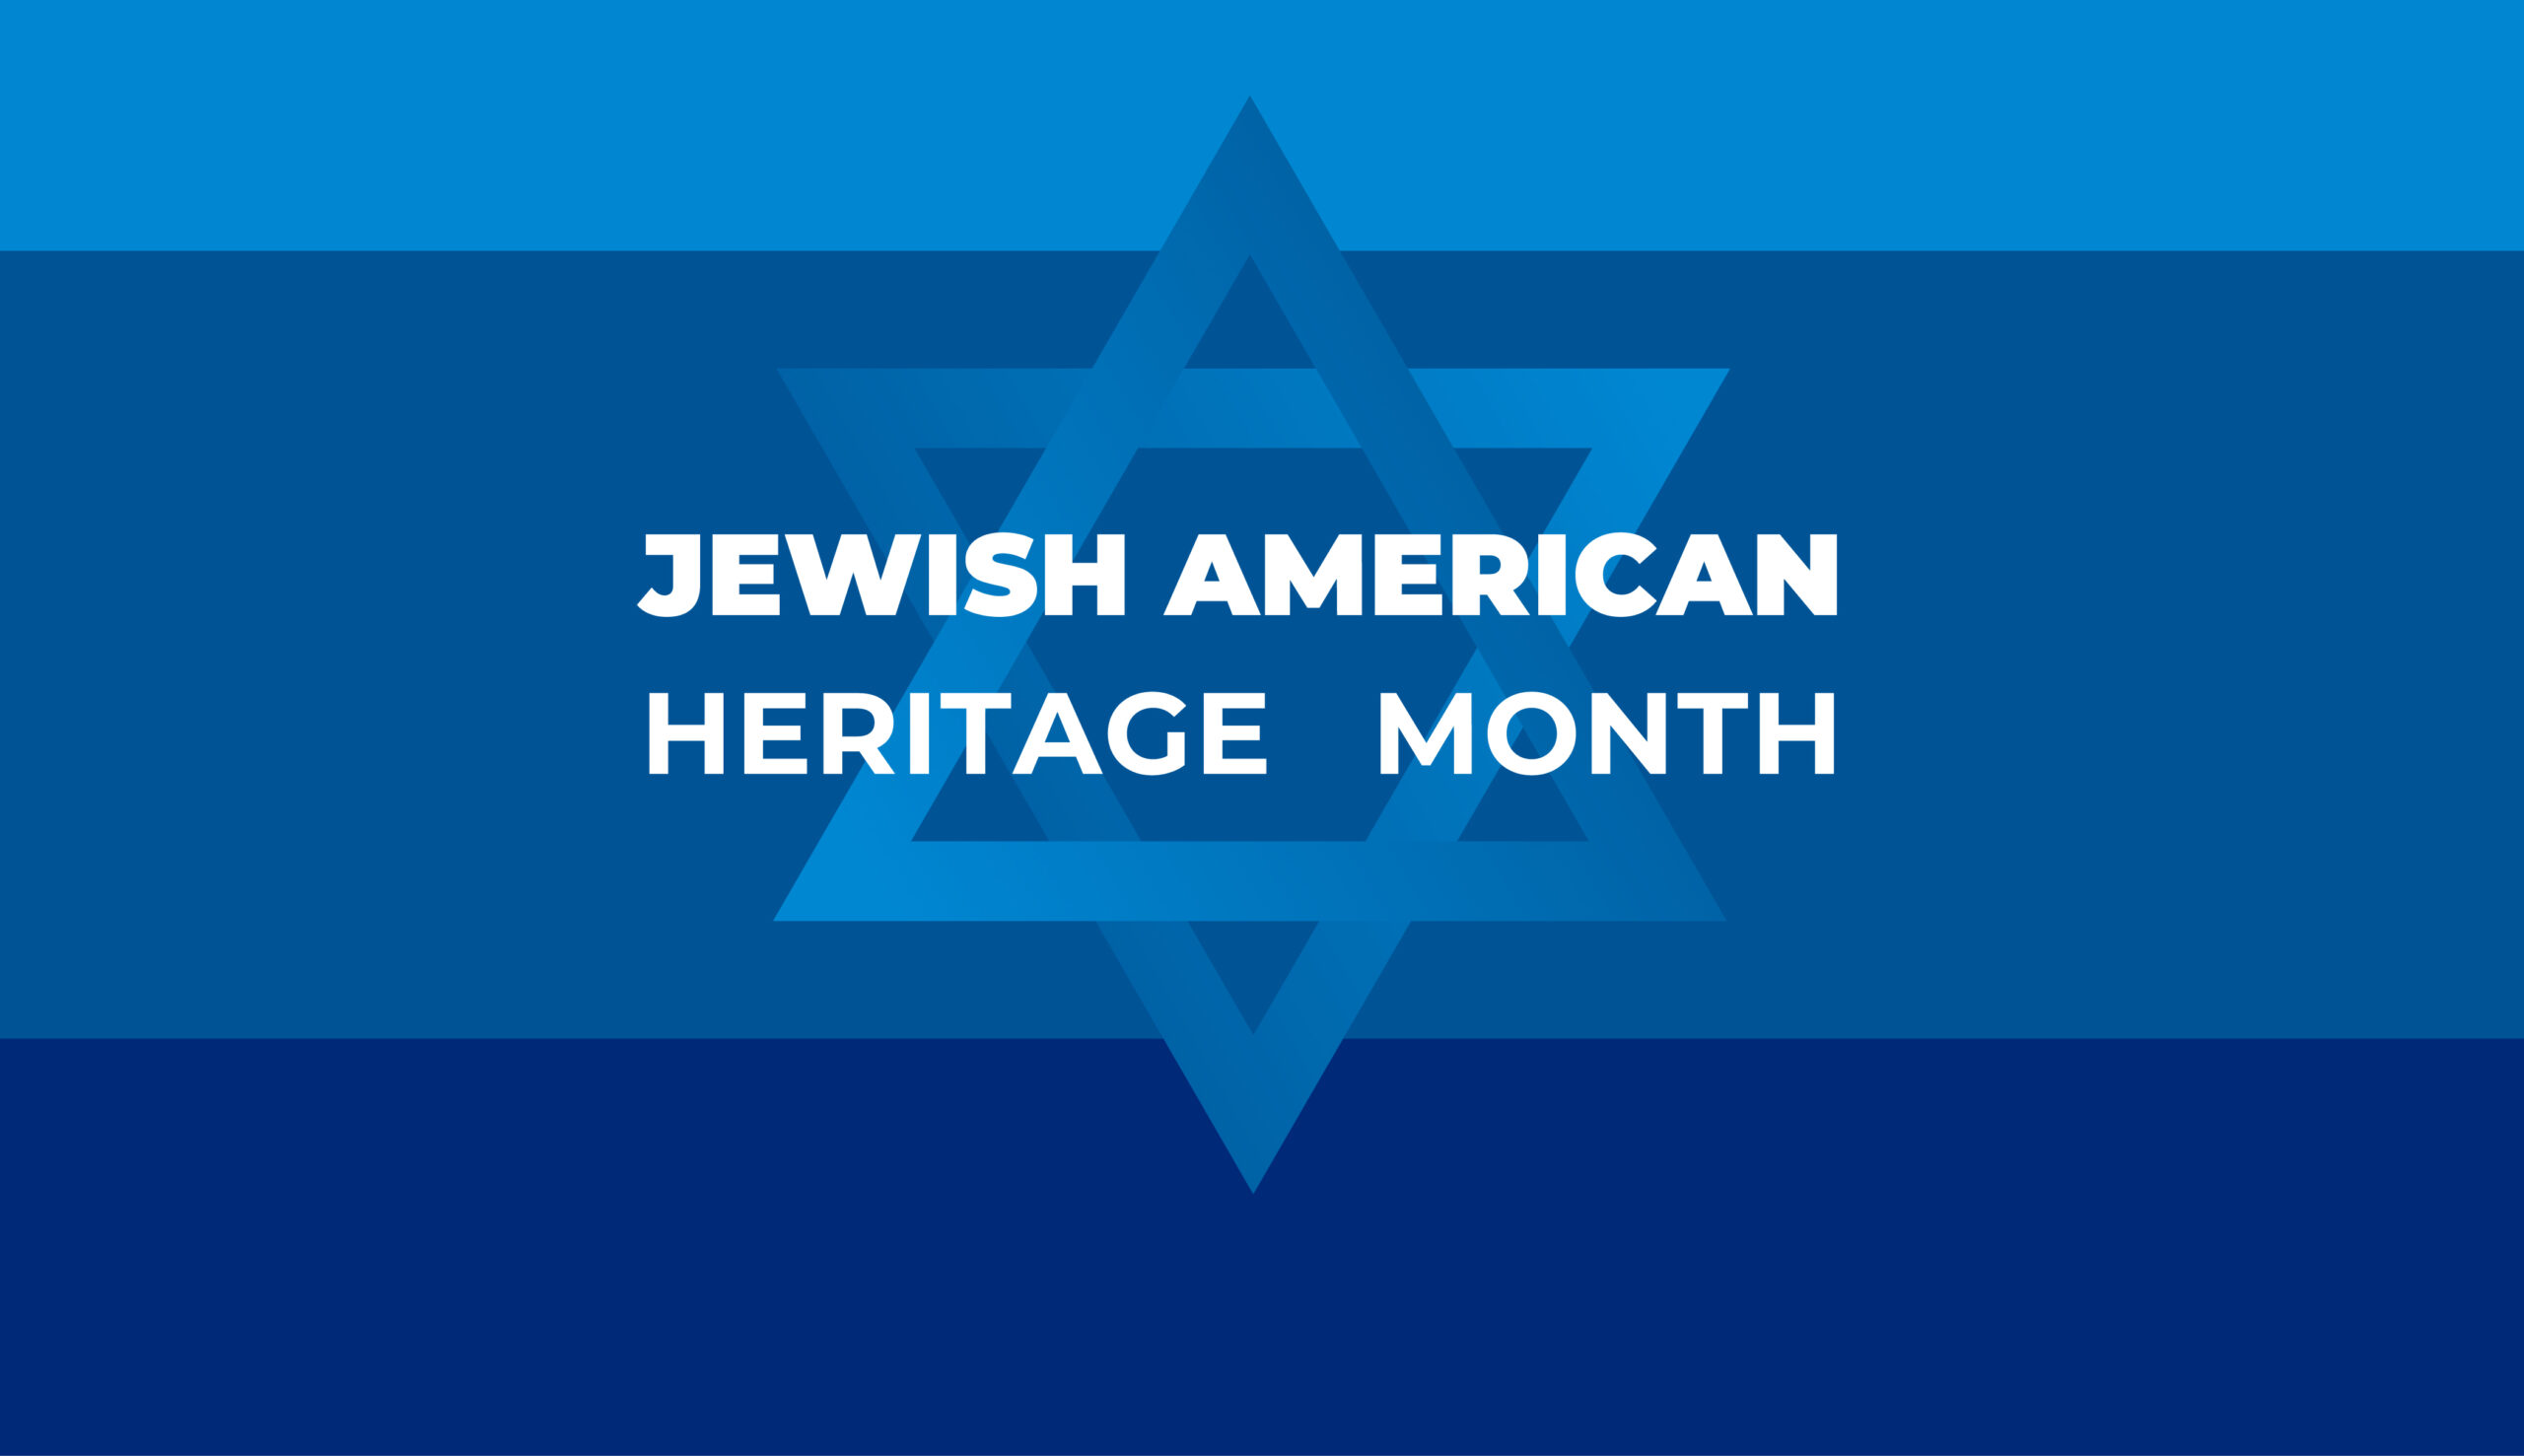 Wir feiern unsere jüdisch-amerikanische Gemeinde